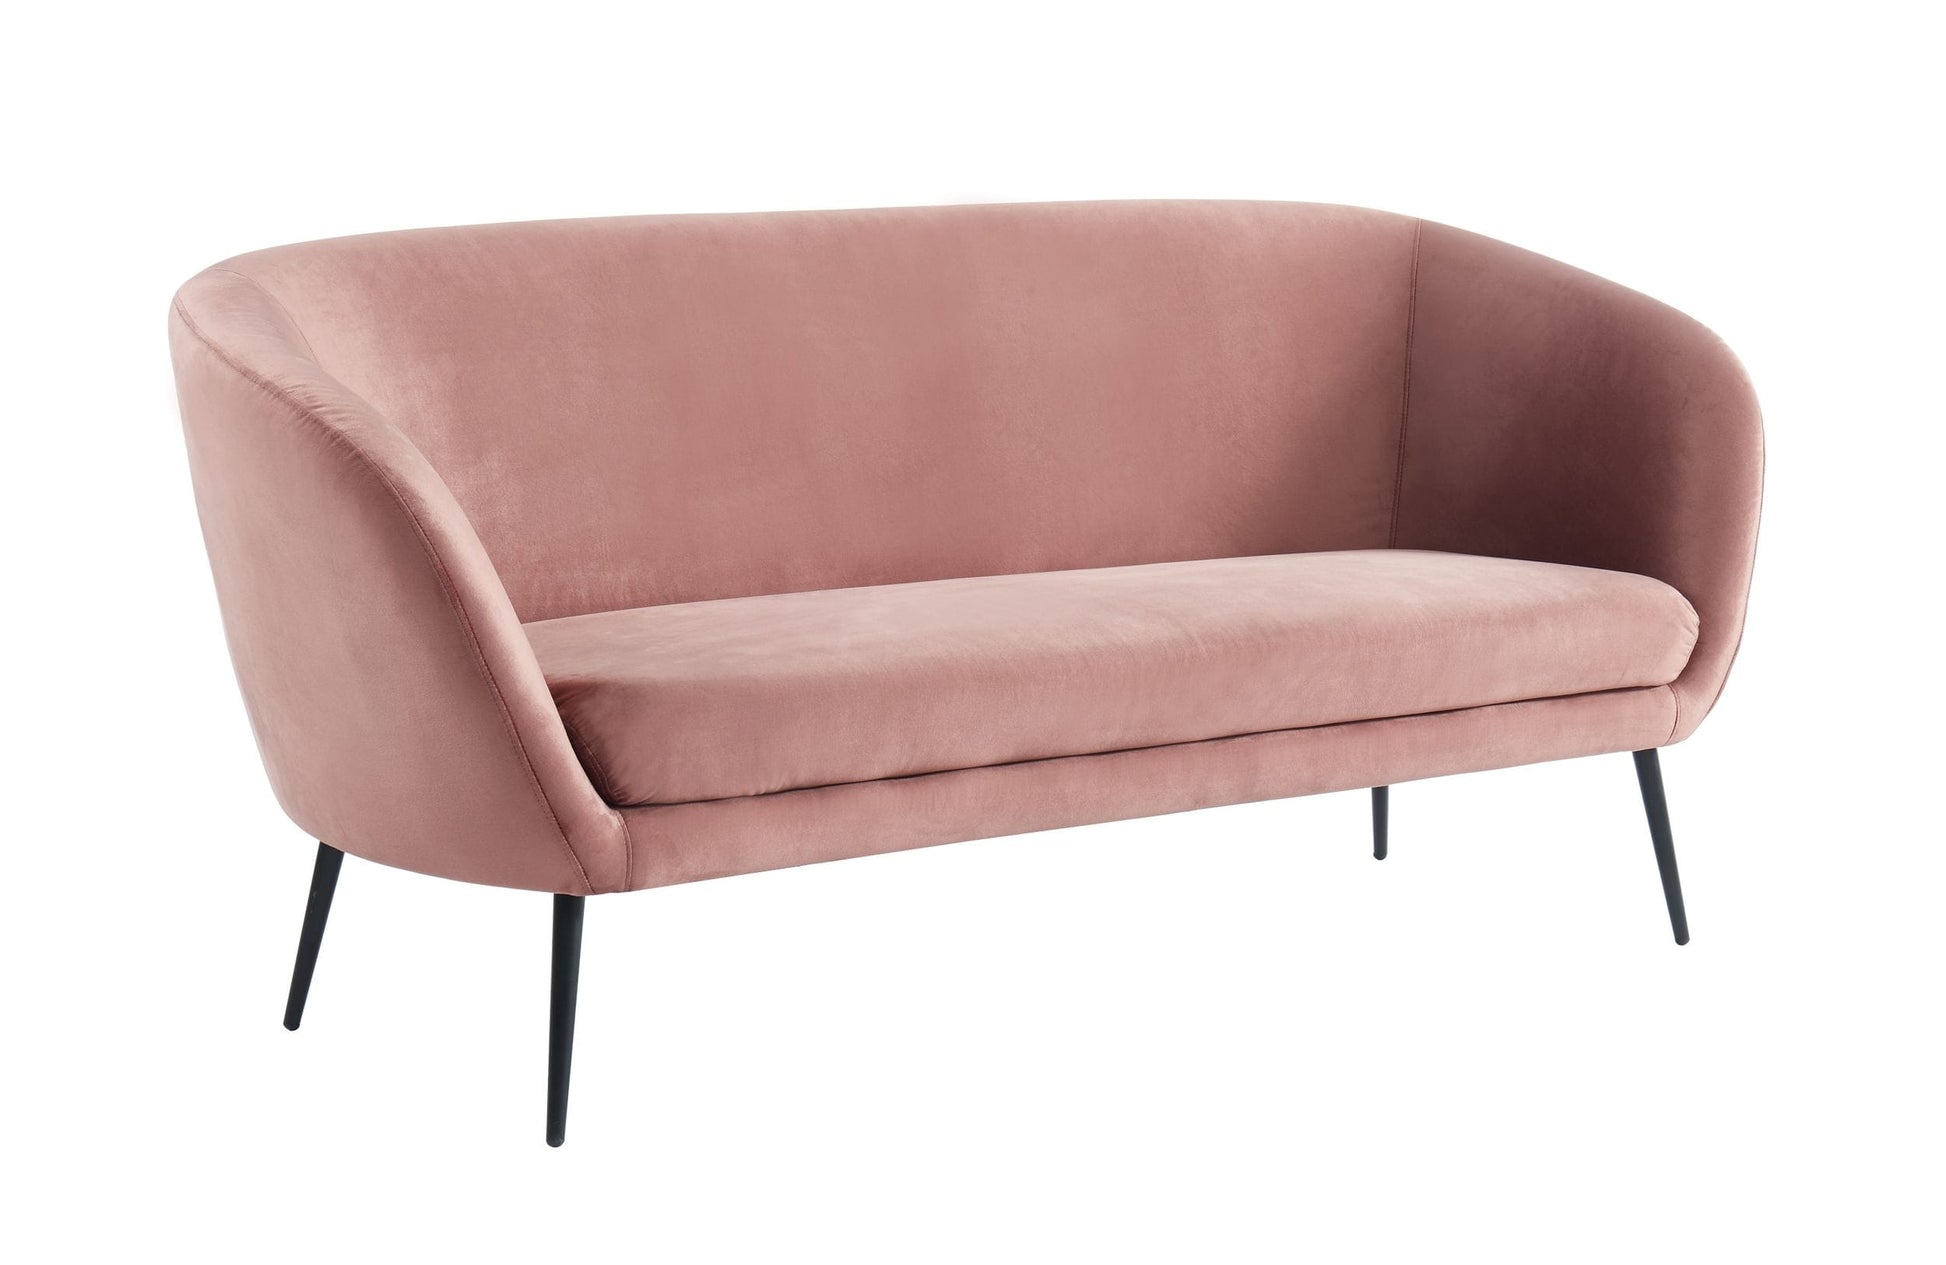 VIG Furniture Divani Casa Koeing Coral Fabric Sofa